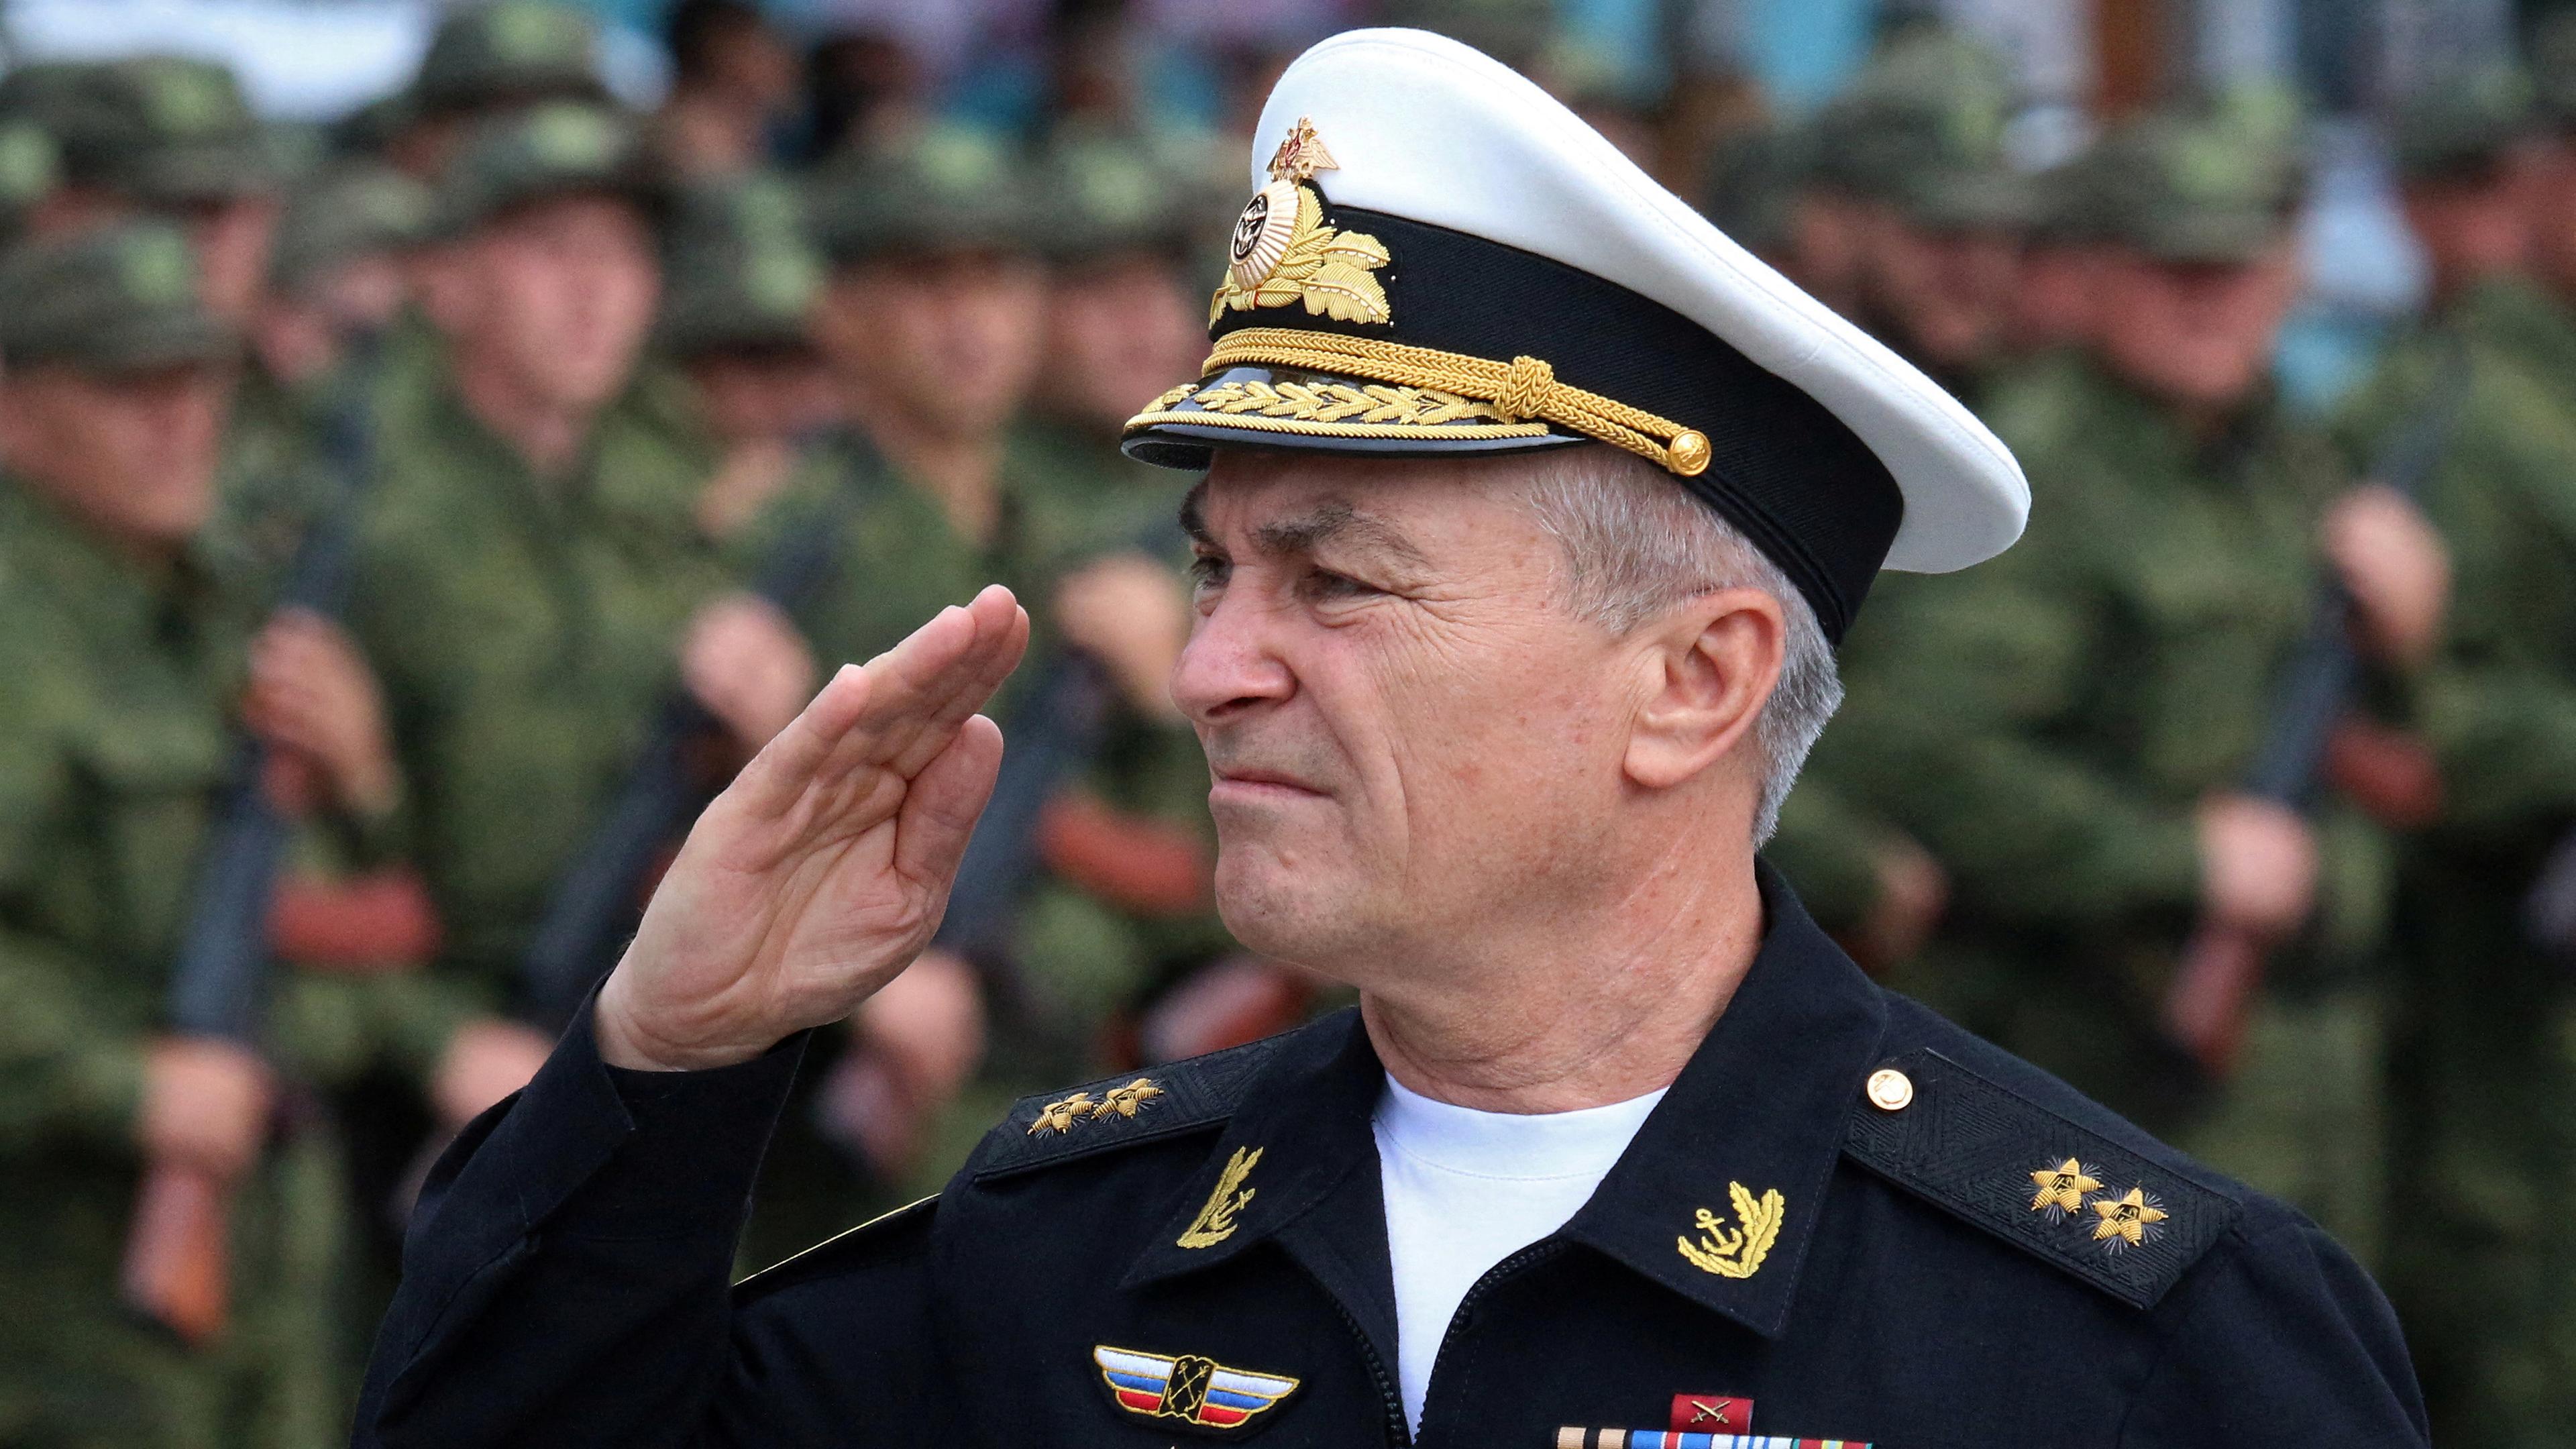 Kommandeur der russischen Schwarzmeerflotte, Vizeadmiral Viktor Sokolov, salutiert während einer Zeremonie in Sewastopol